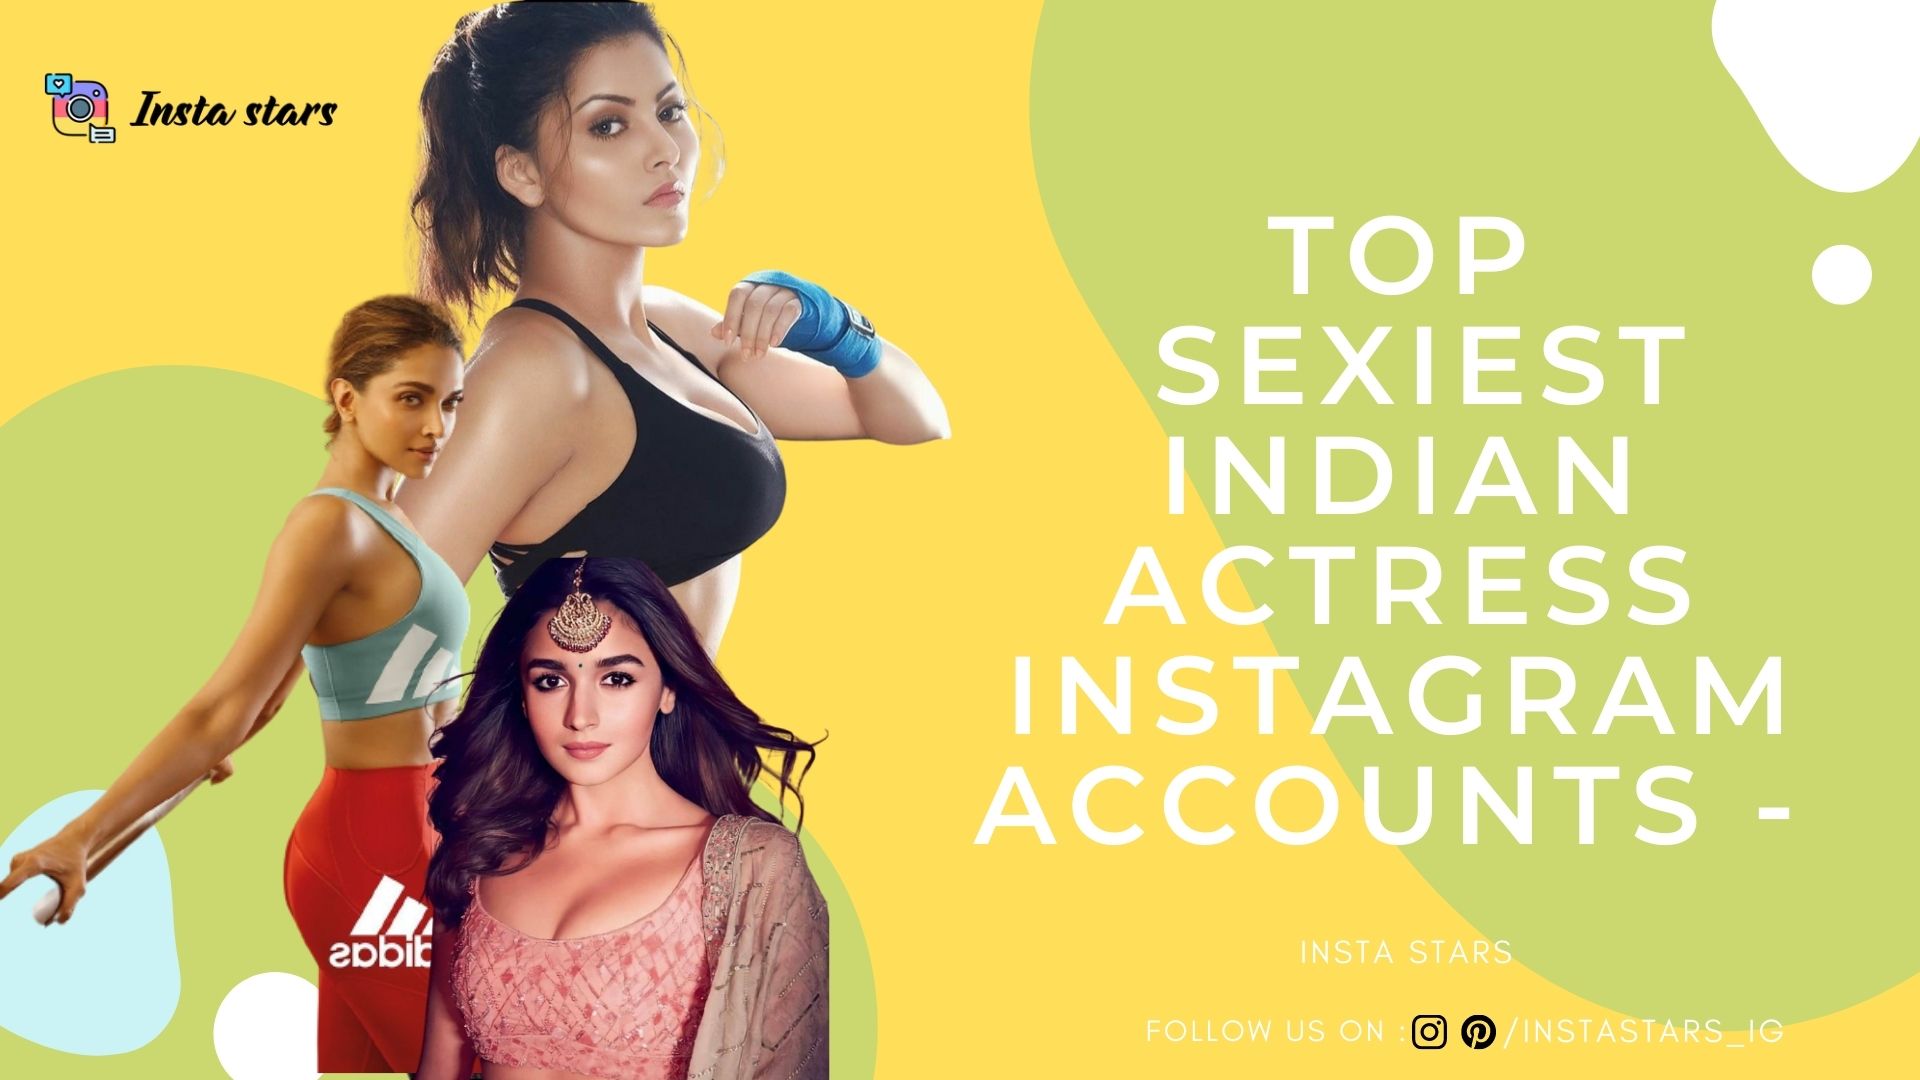 Top 10 Sexiest Indian Actress Instagram Accounts - Insta Stars